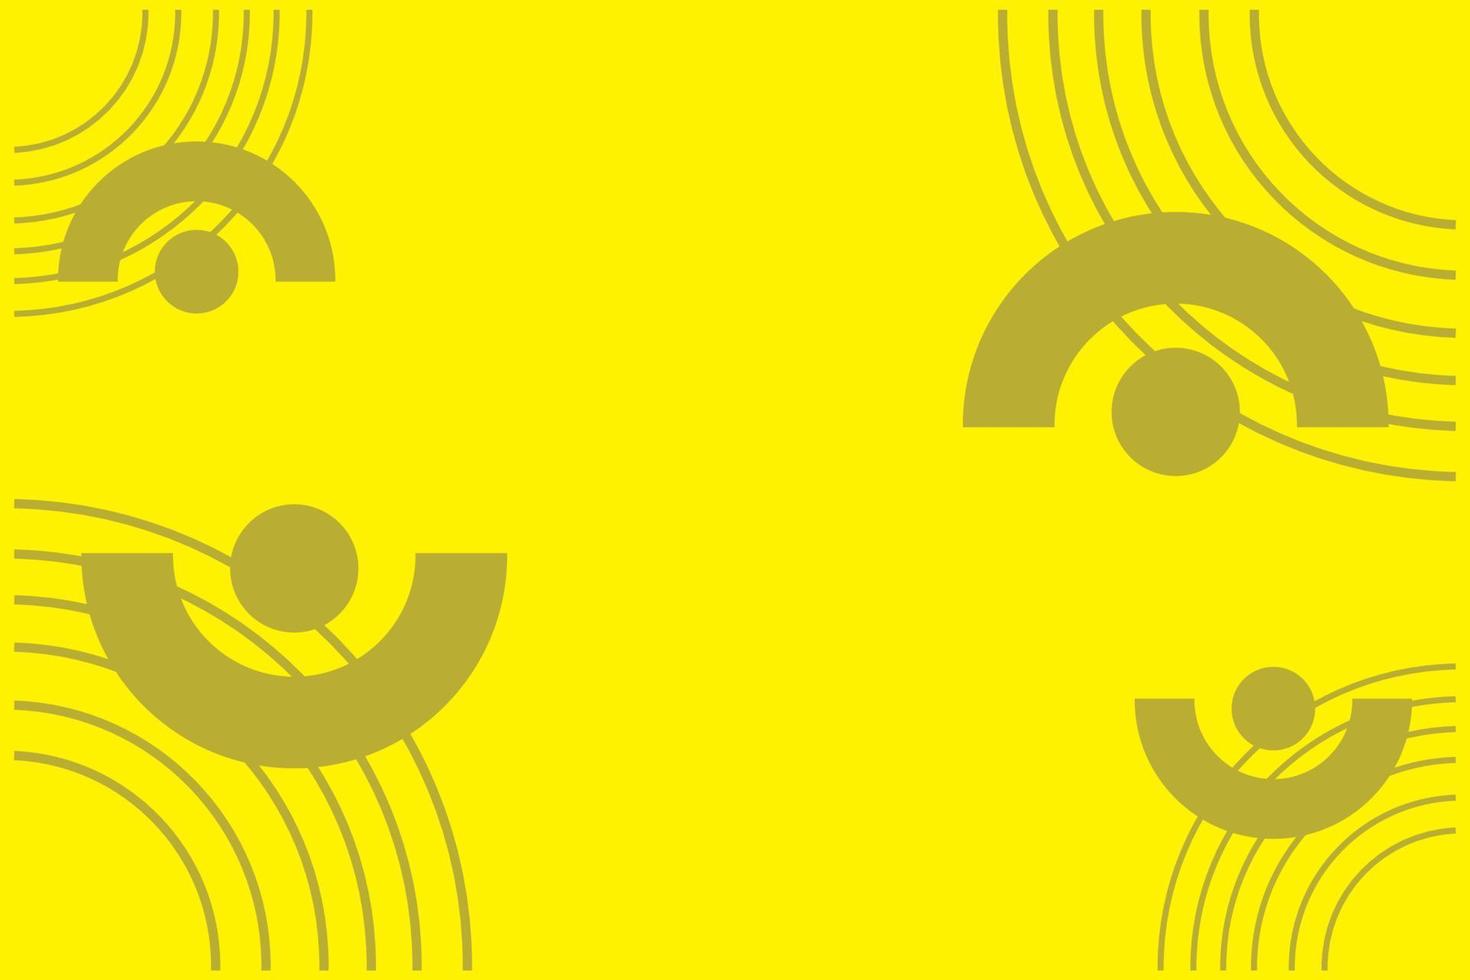 illustration vectorielle d'un fond abstrait de couleur jaune vecteur